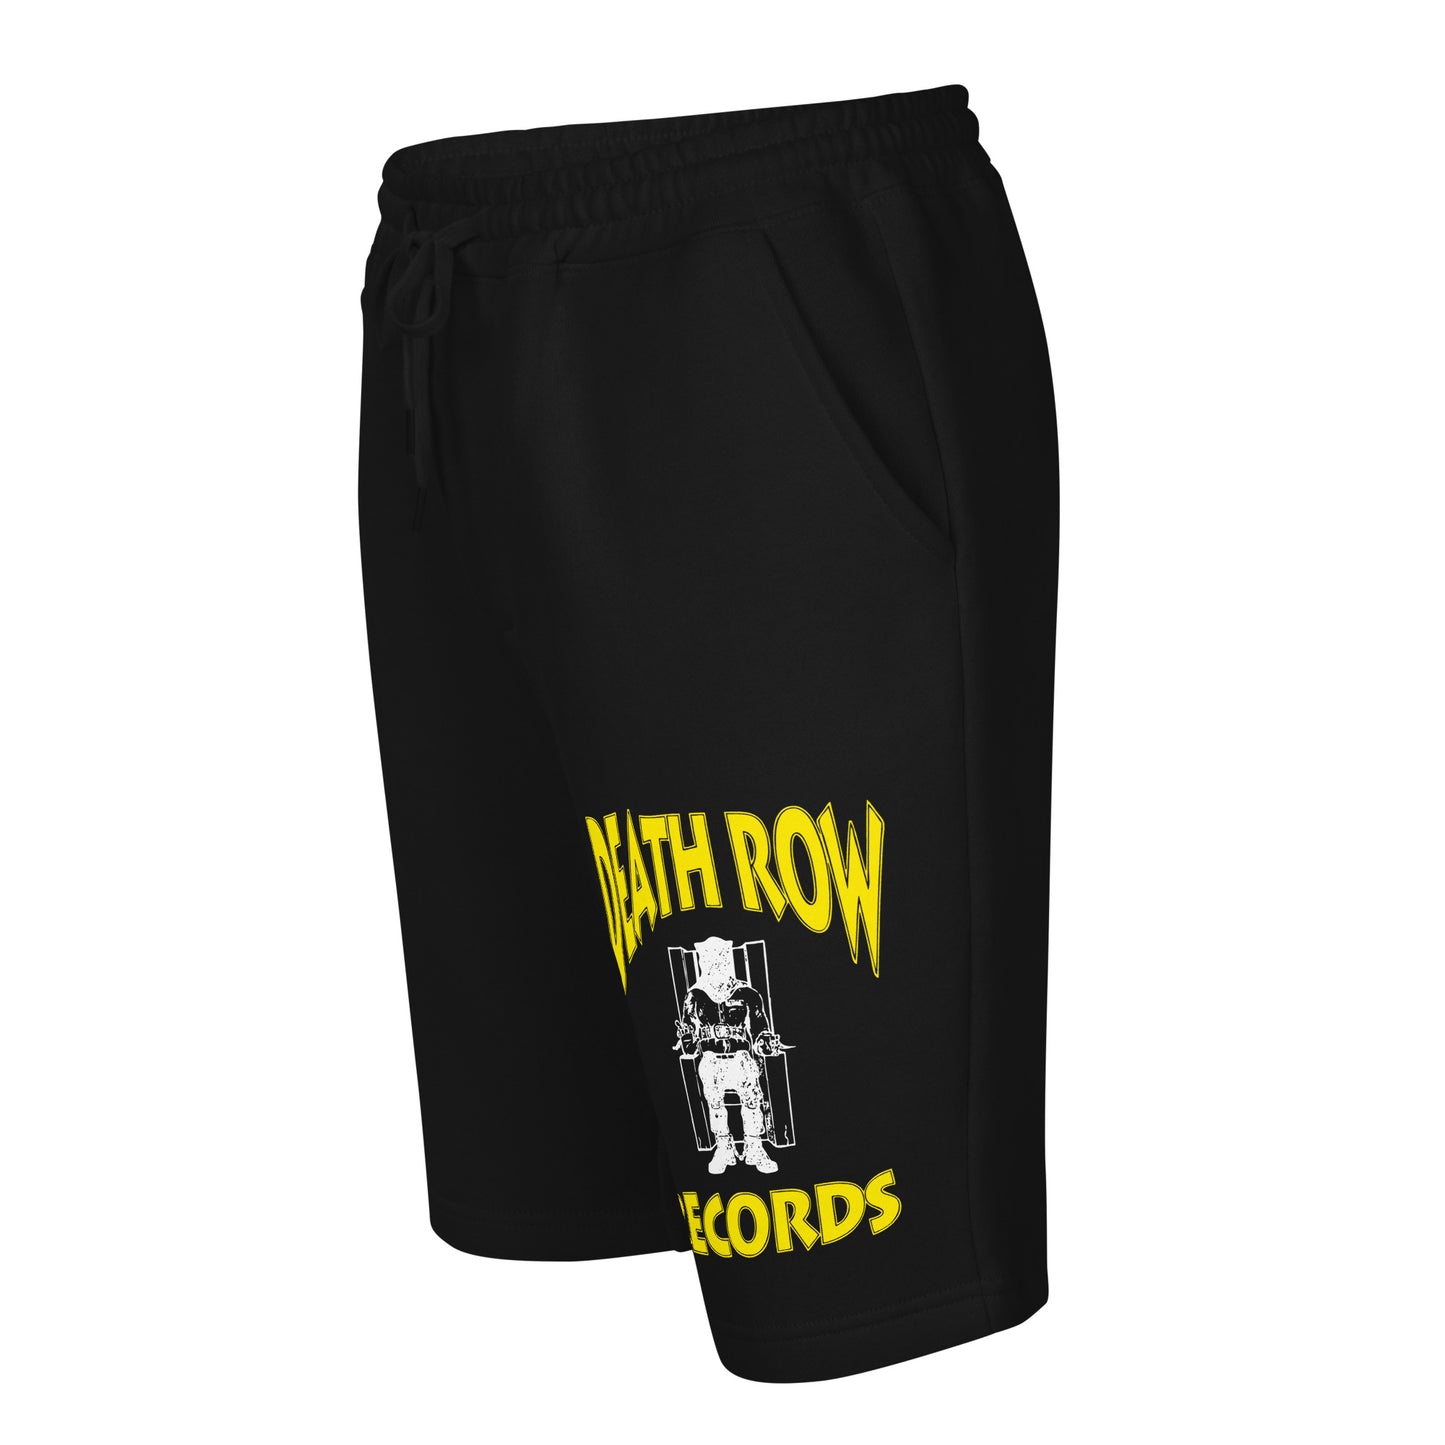 The row Men's shorts